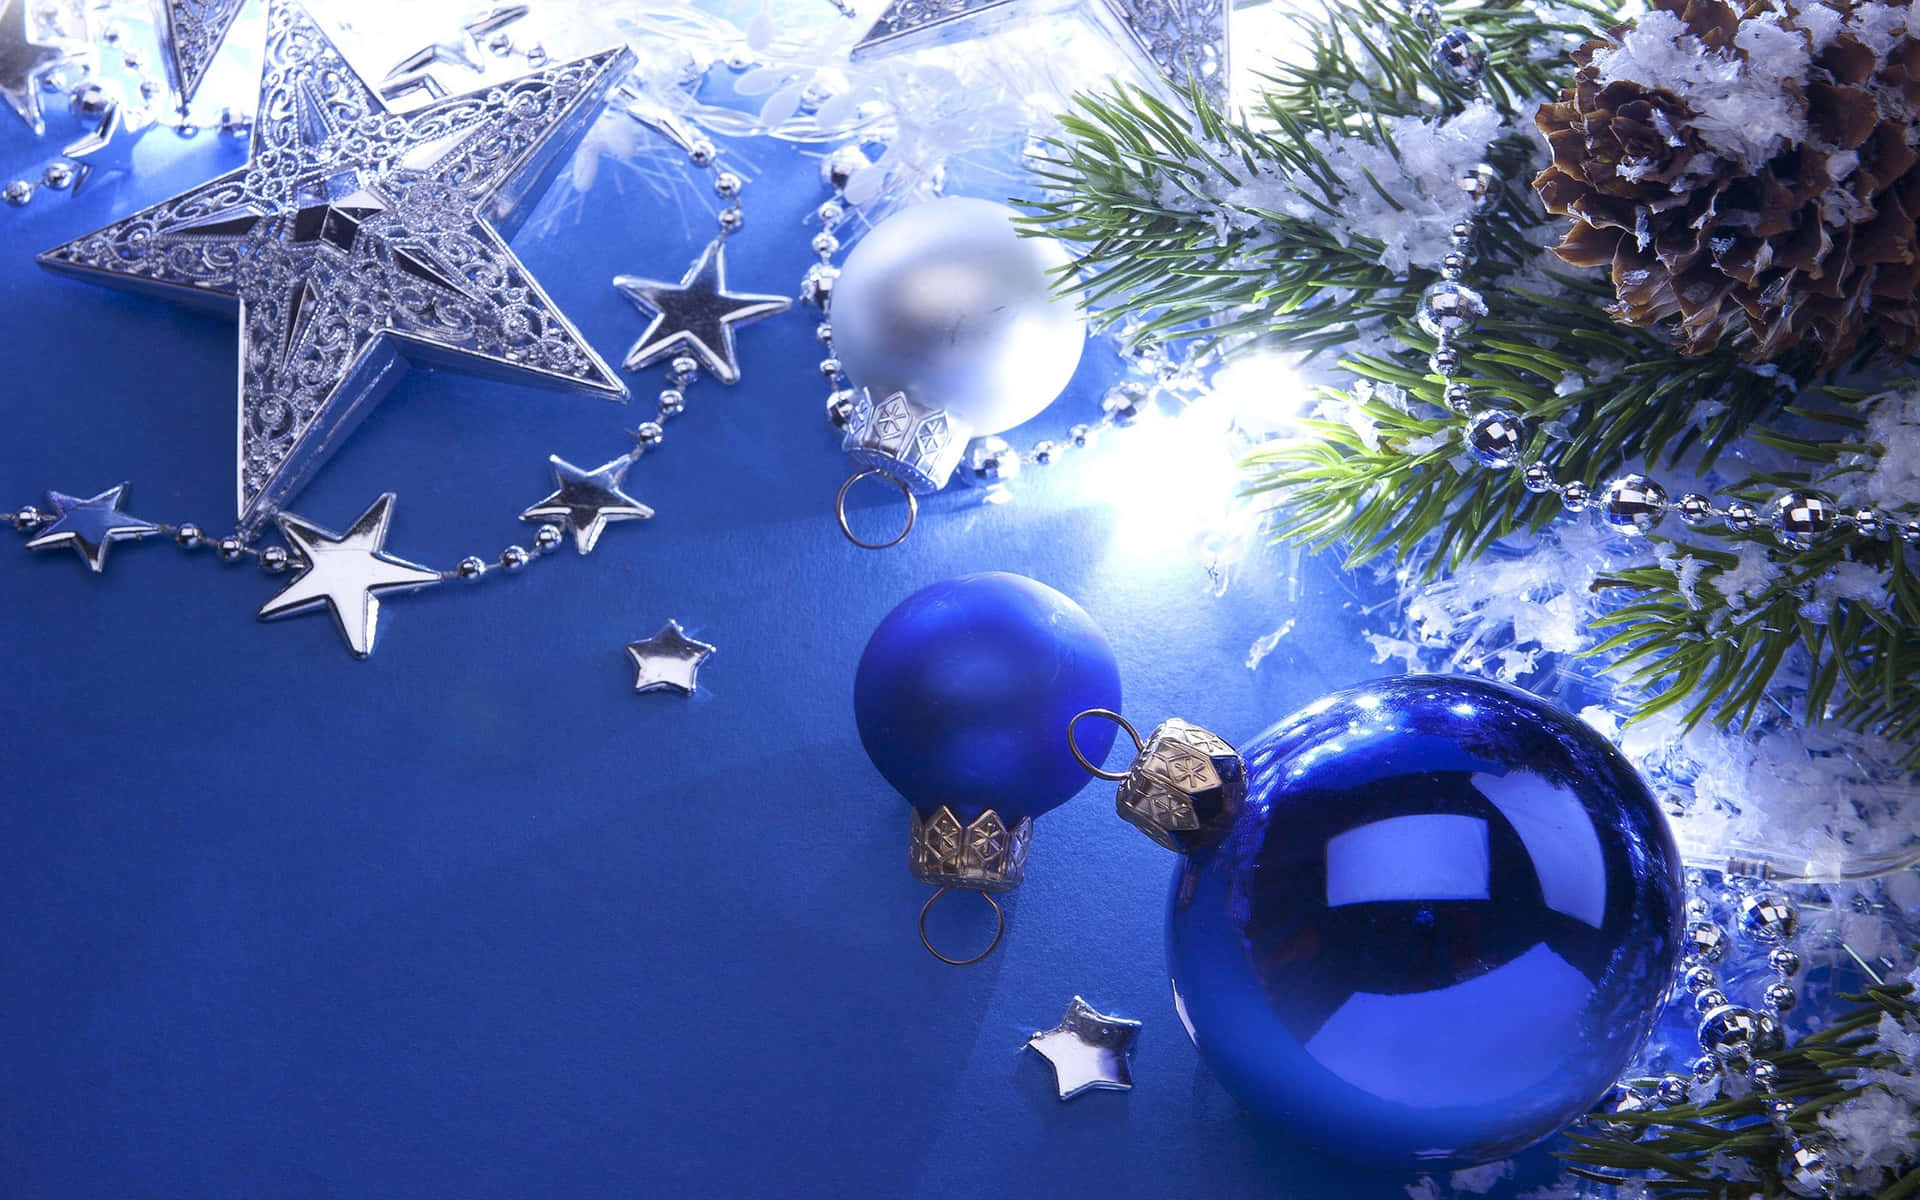 Einblauner Hintergrund Mit Einem Weihnachtsbaum Und Weihnachtsschmuck. Wallpaper